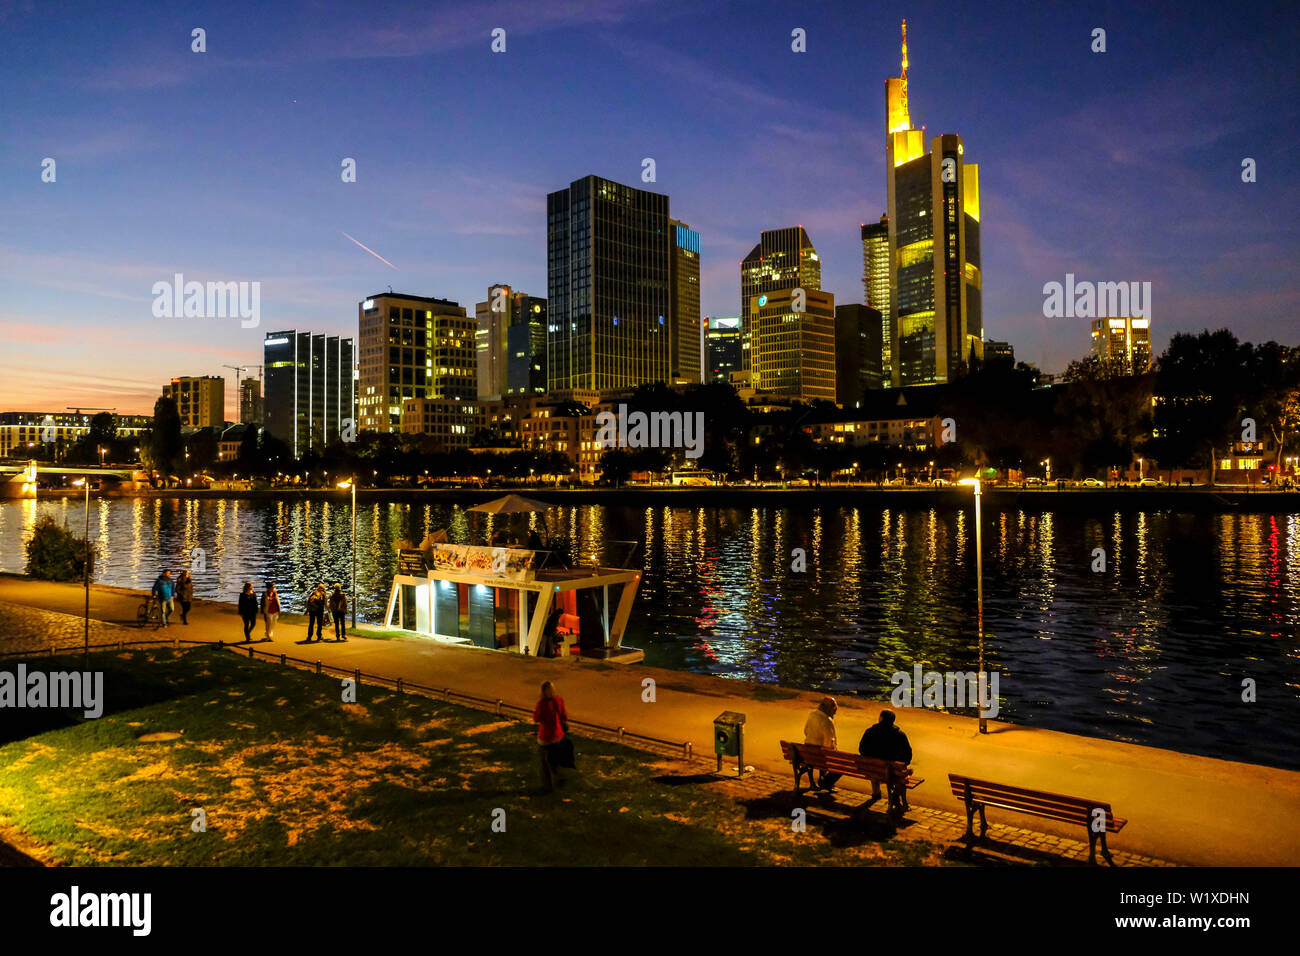 21.10.2018, Frankfurt am Main, Hesse, Germania - Vista di notte dal Museumsufer oltre il Fiume Main a Francoforte per la skyline di Francoforte - Blick b Foto Stock